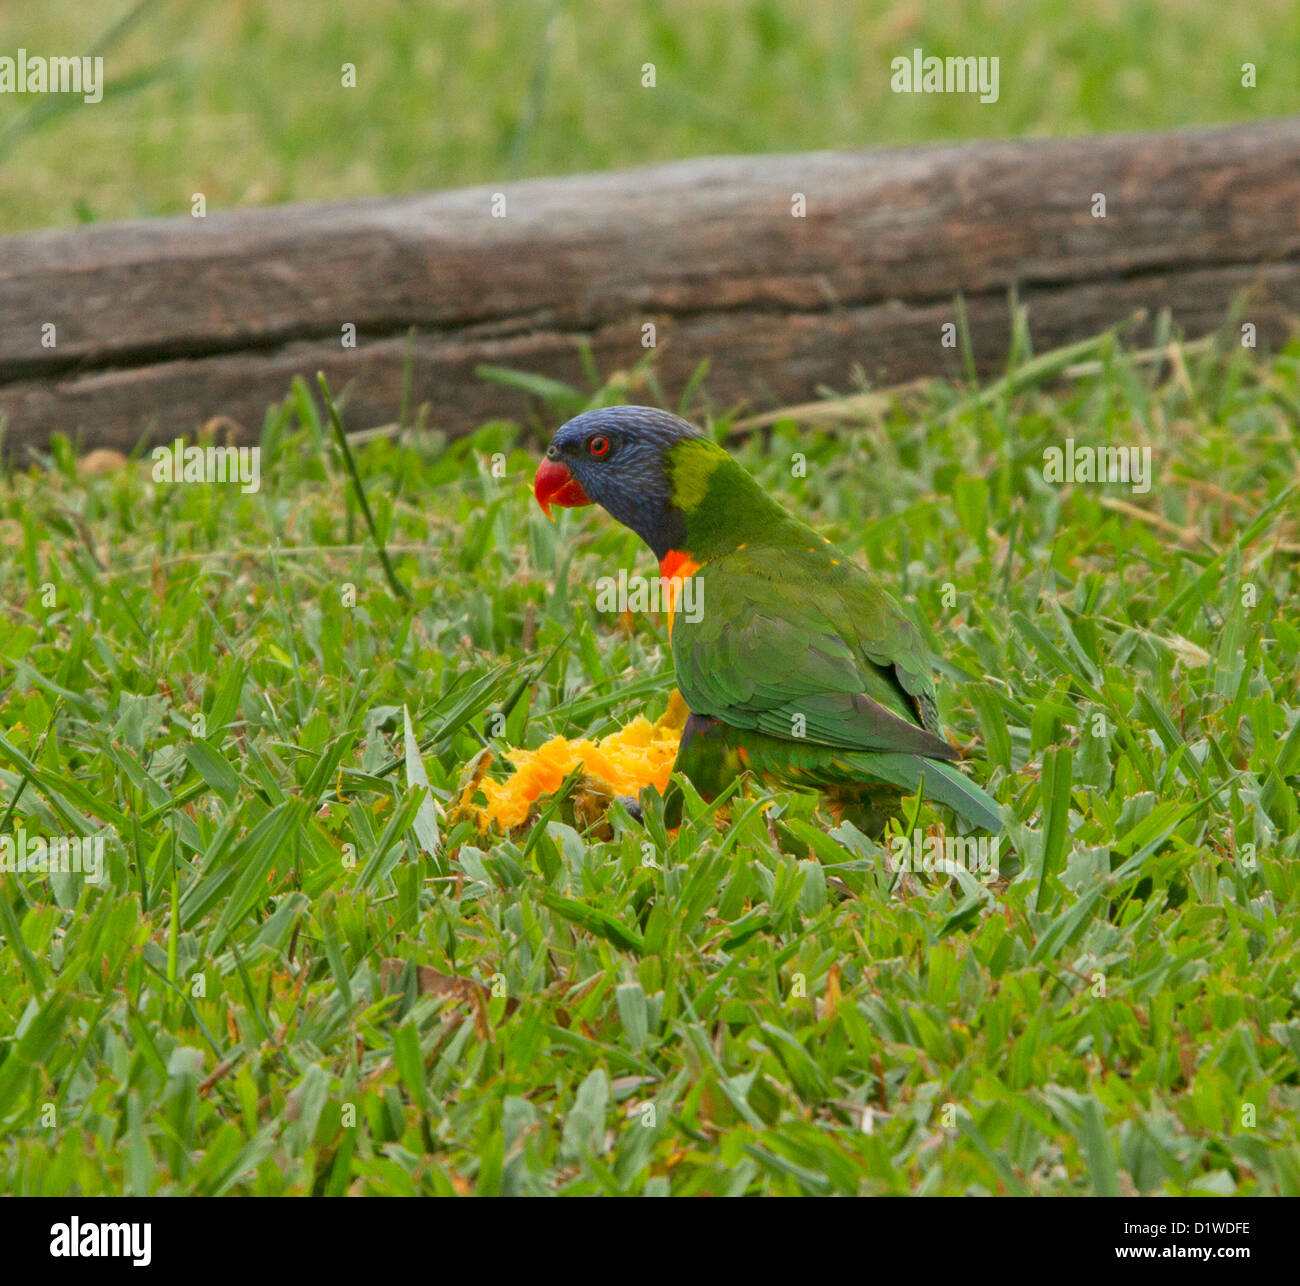 Rainbow lorikeet - an Australian parrot - feeding on fallen mango - in the wild Stock Photo